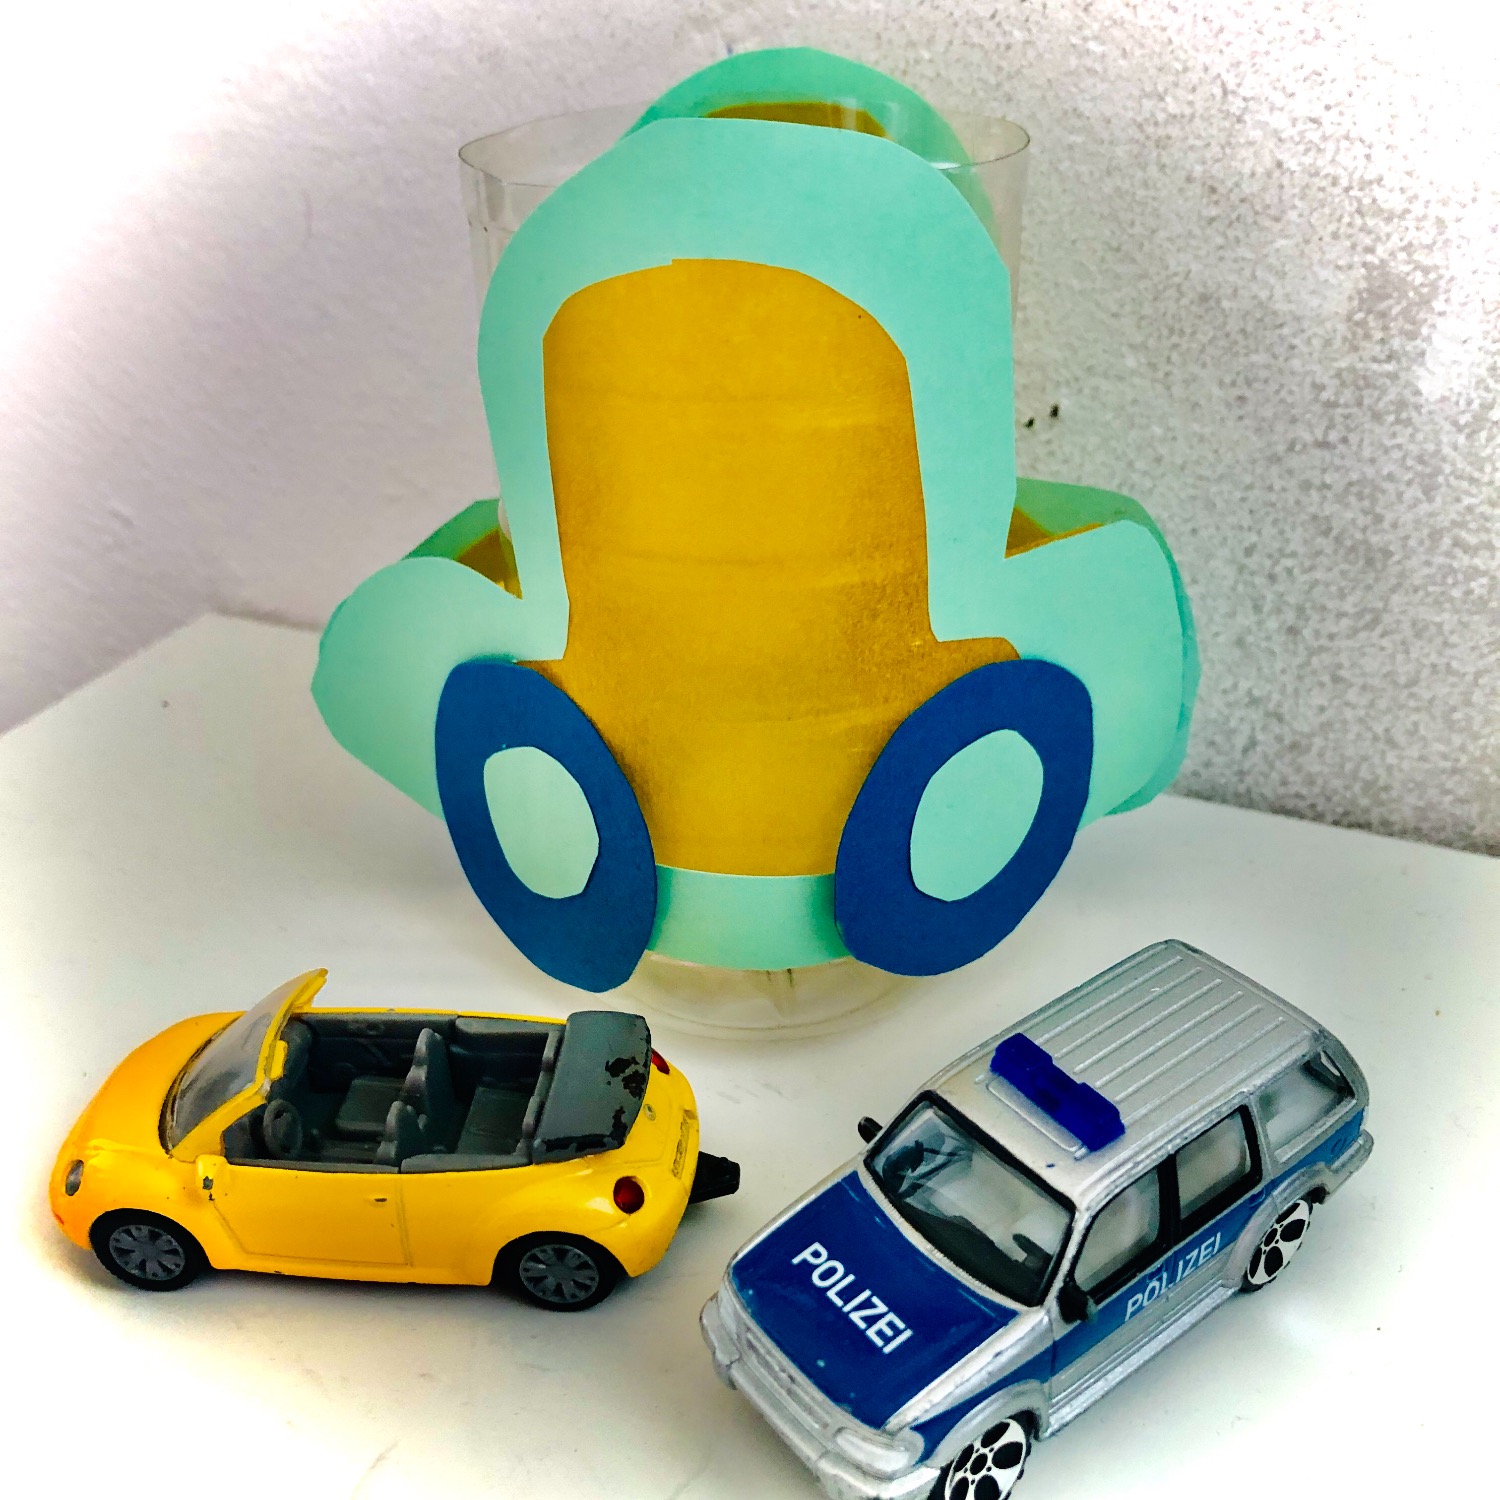 Titelbild zur Bastel- und DIY-Idee für Kinder '(459) Auto-Laterne basteln'